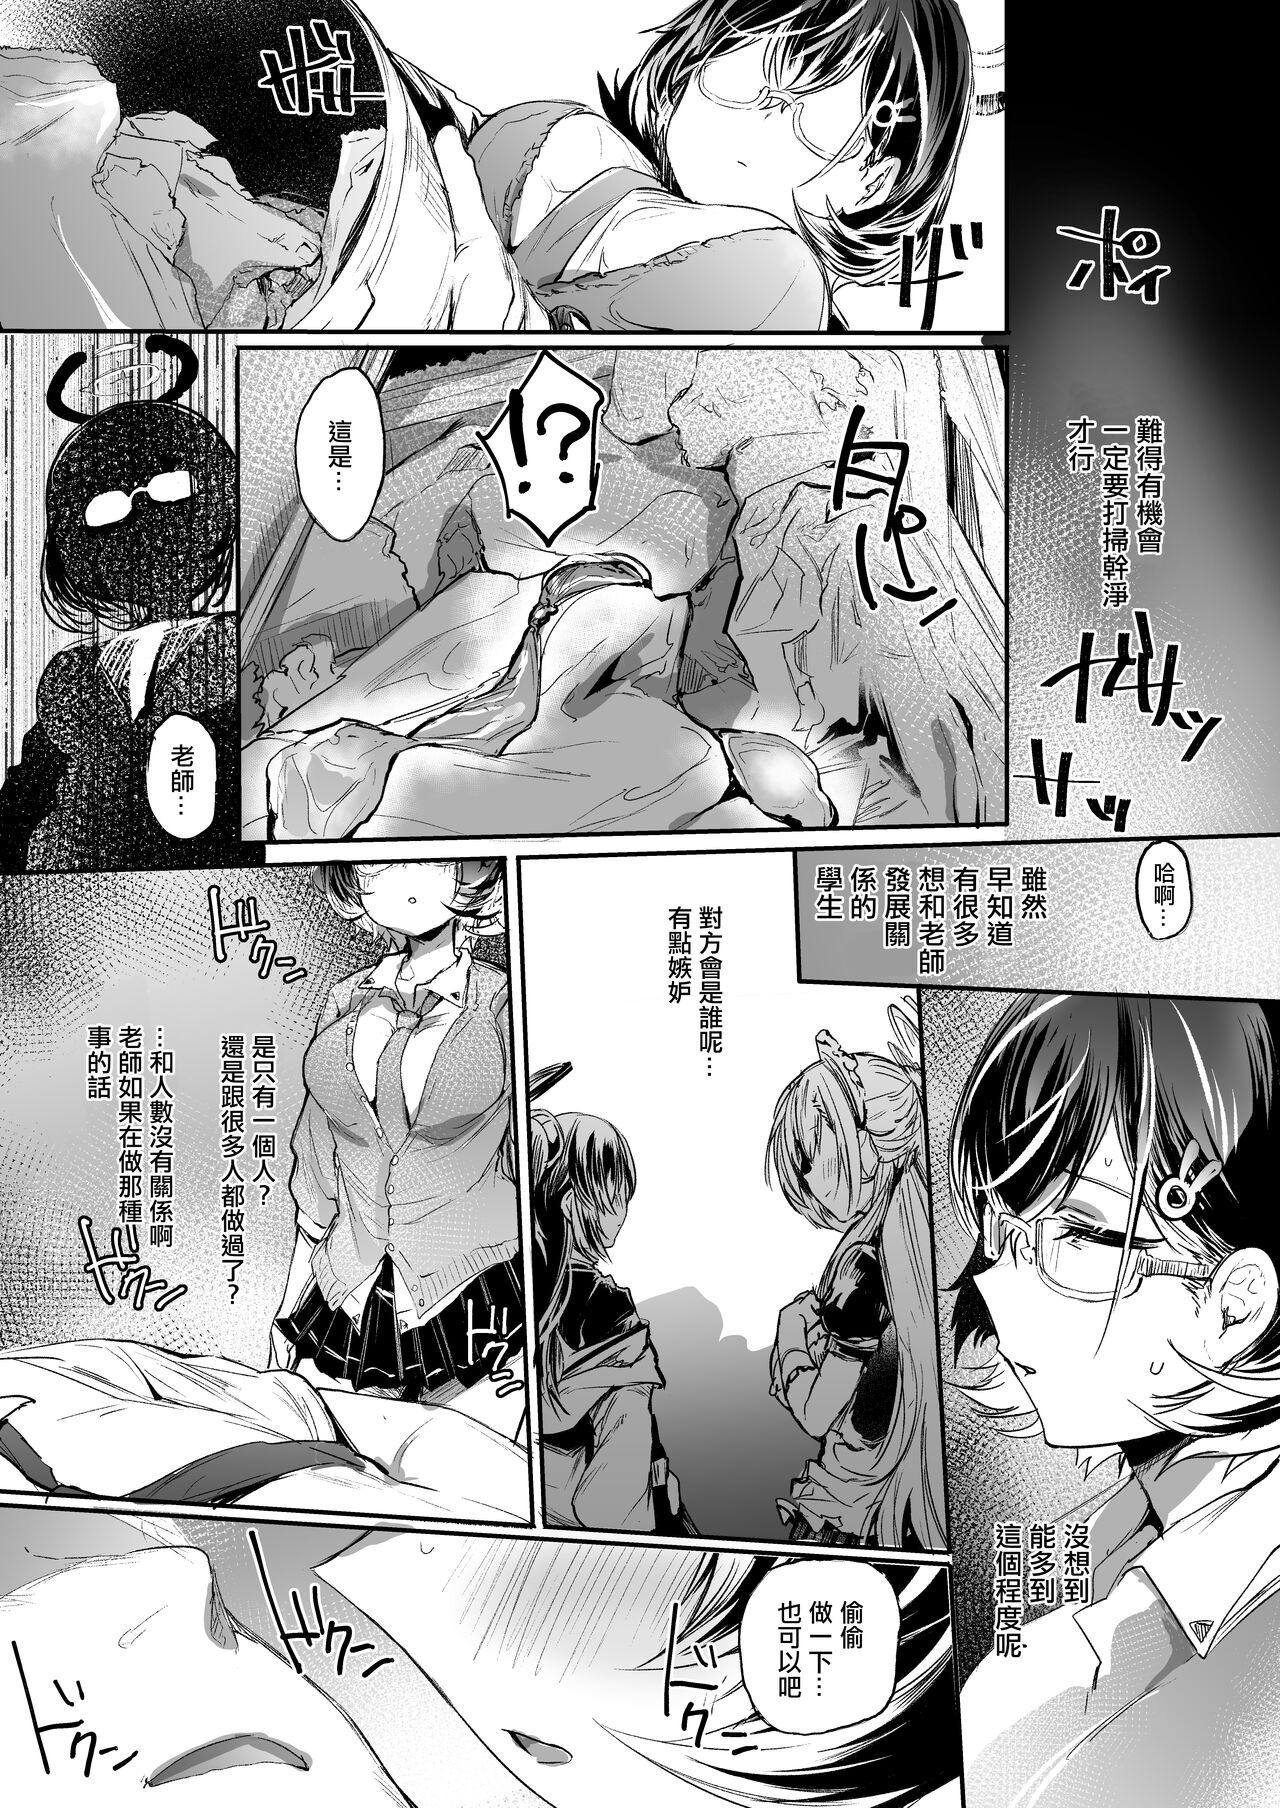 Butt Sex Gomibako o Kara ni Suru - Blue archive Dotado - Page 4